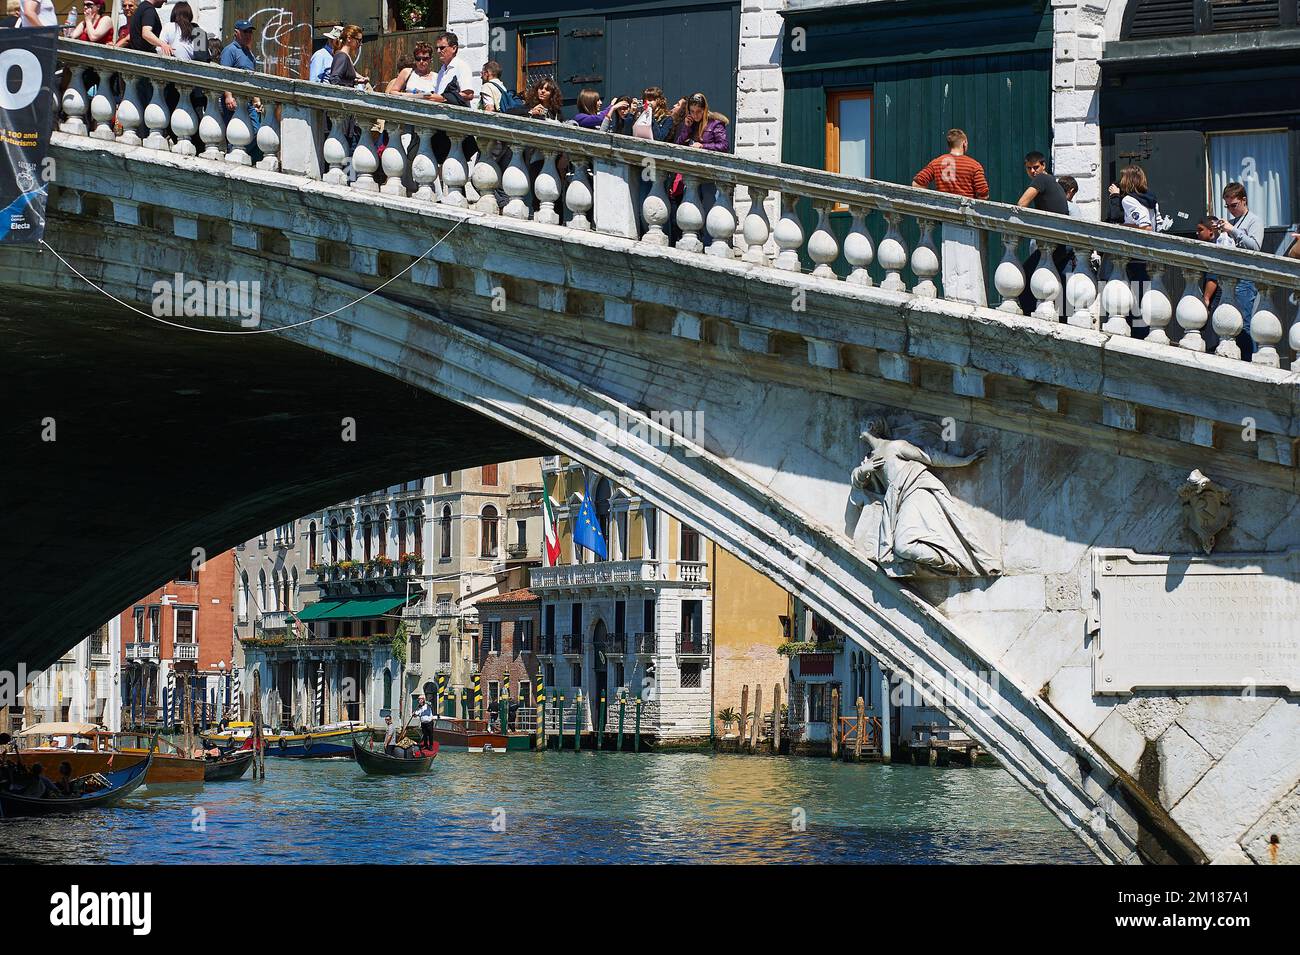 Young people in Rialto Bridge, Venice Stock Photo